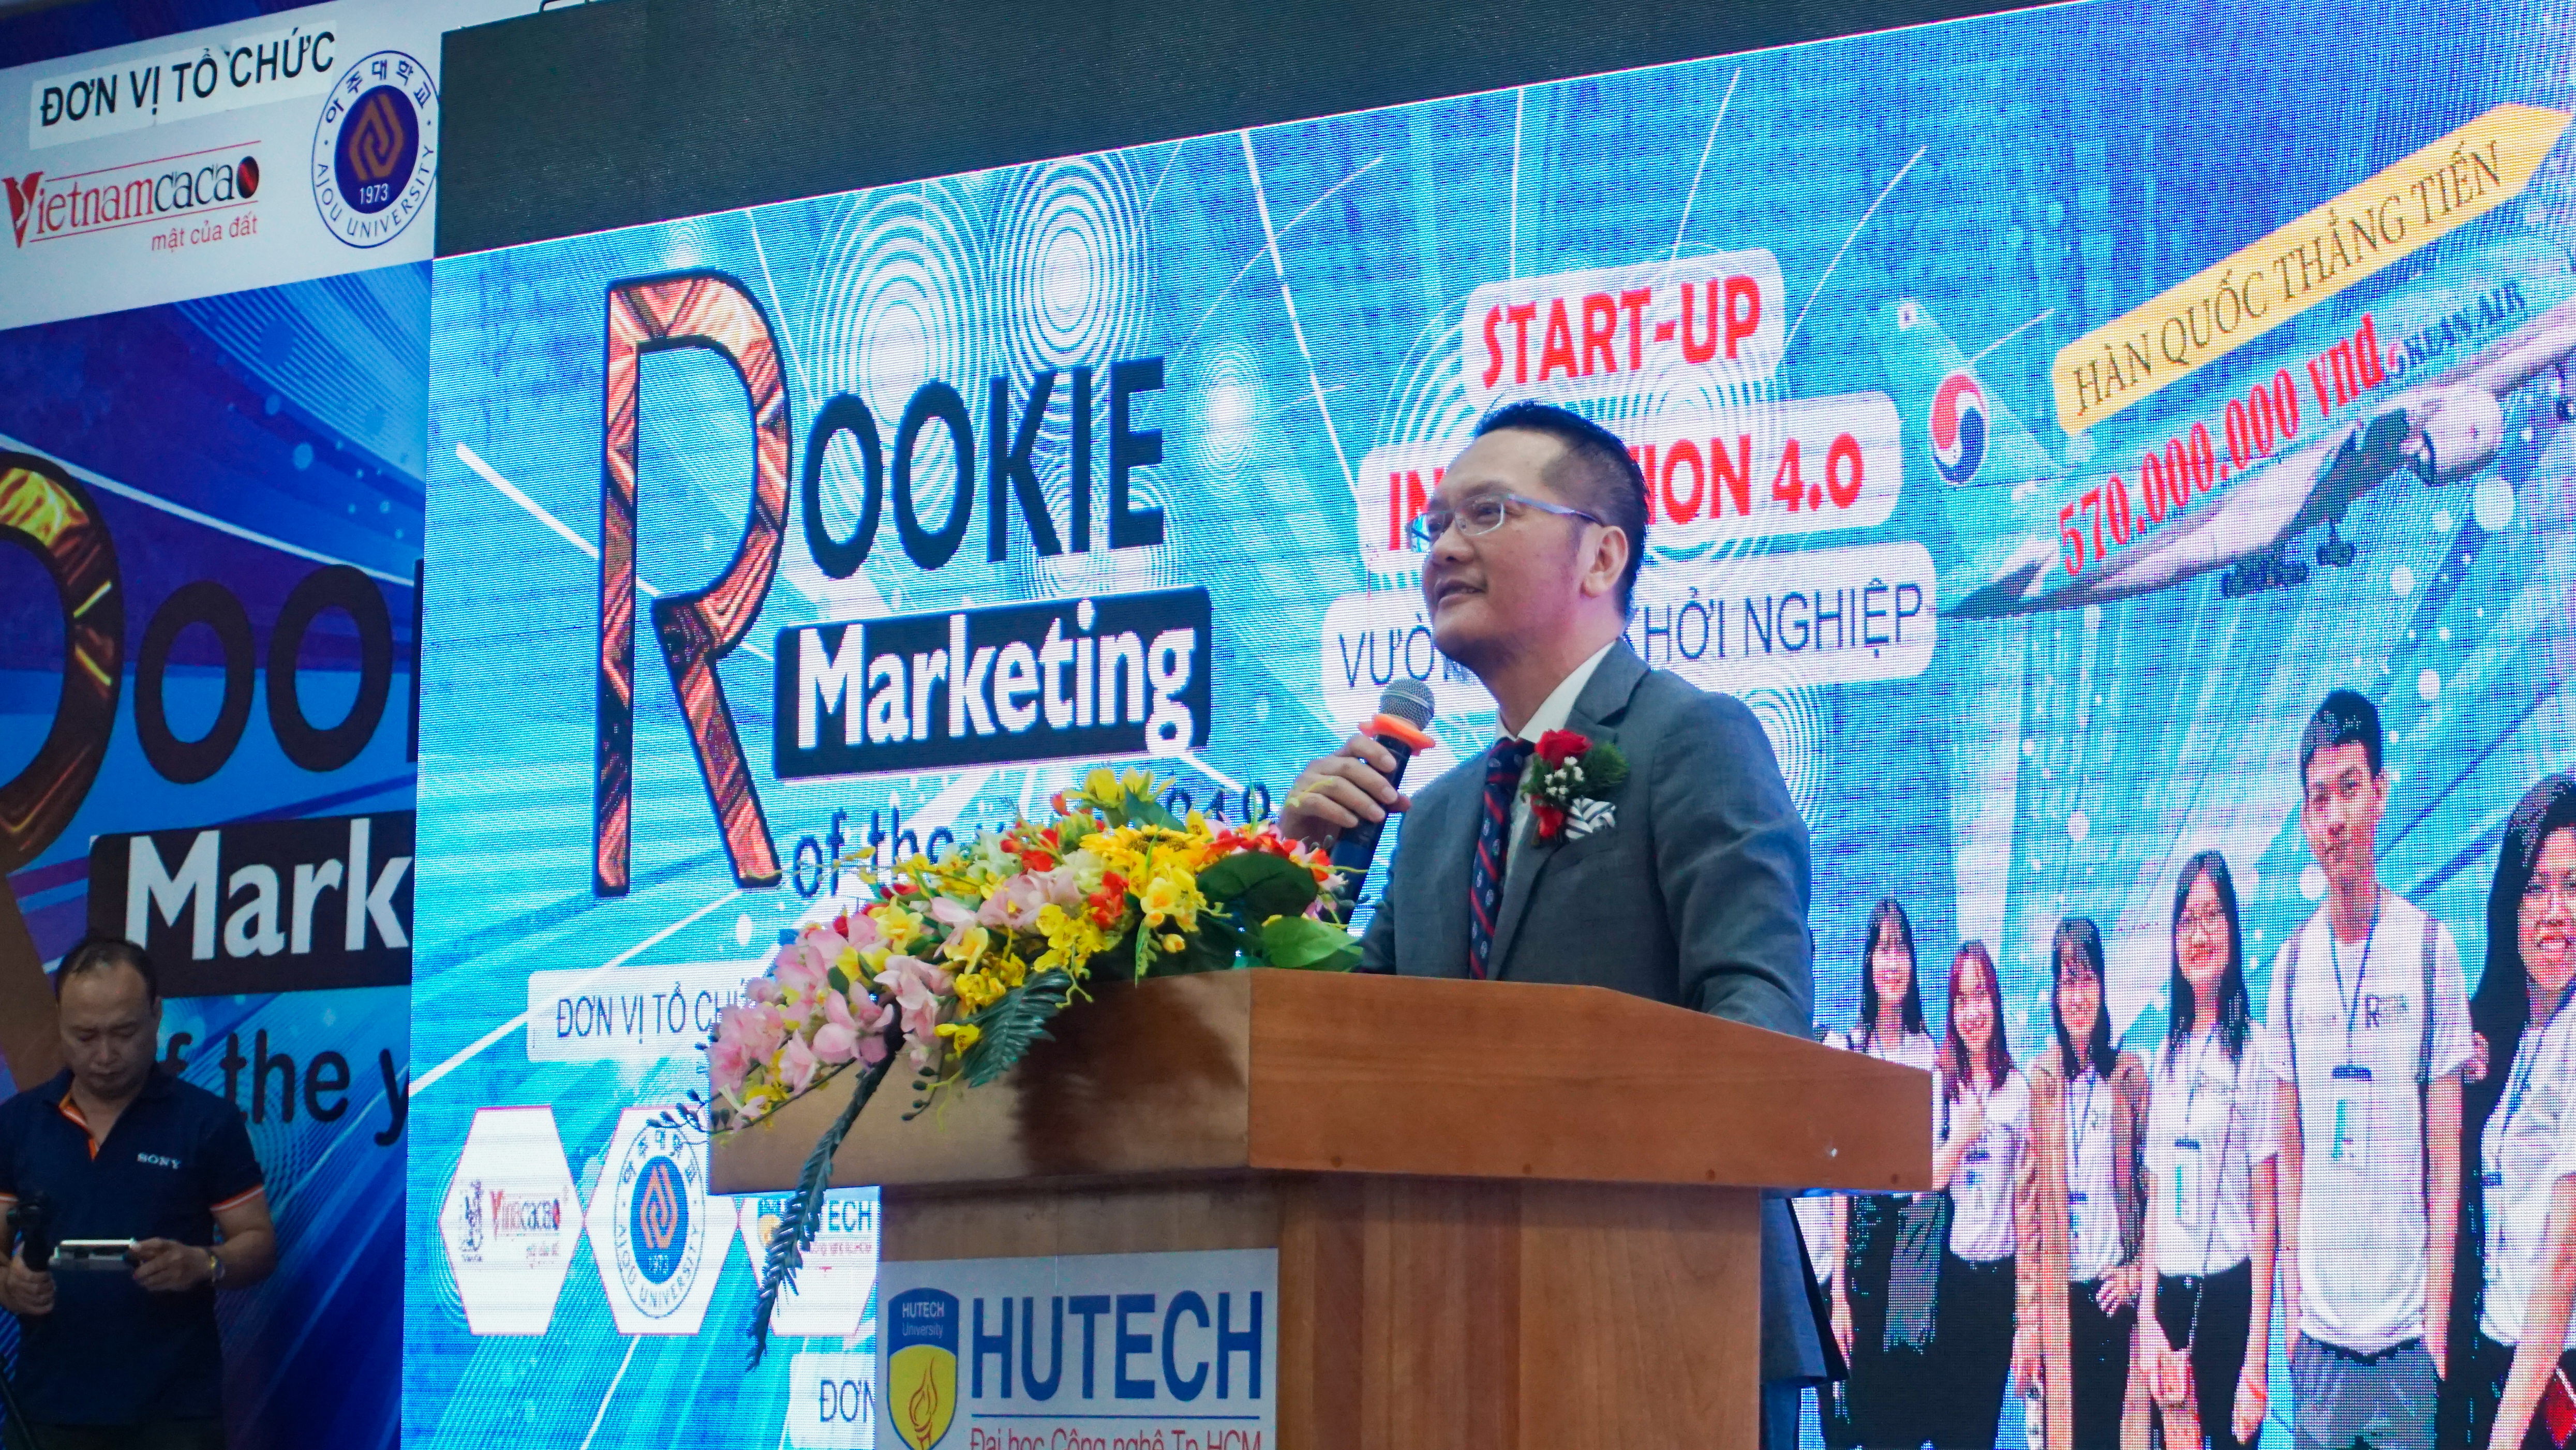 Cuộc thi “Rookie - Marketing of the Year” chính thức khởi động mùa 2 tại ĐH HUTECH 44